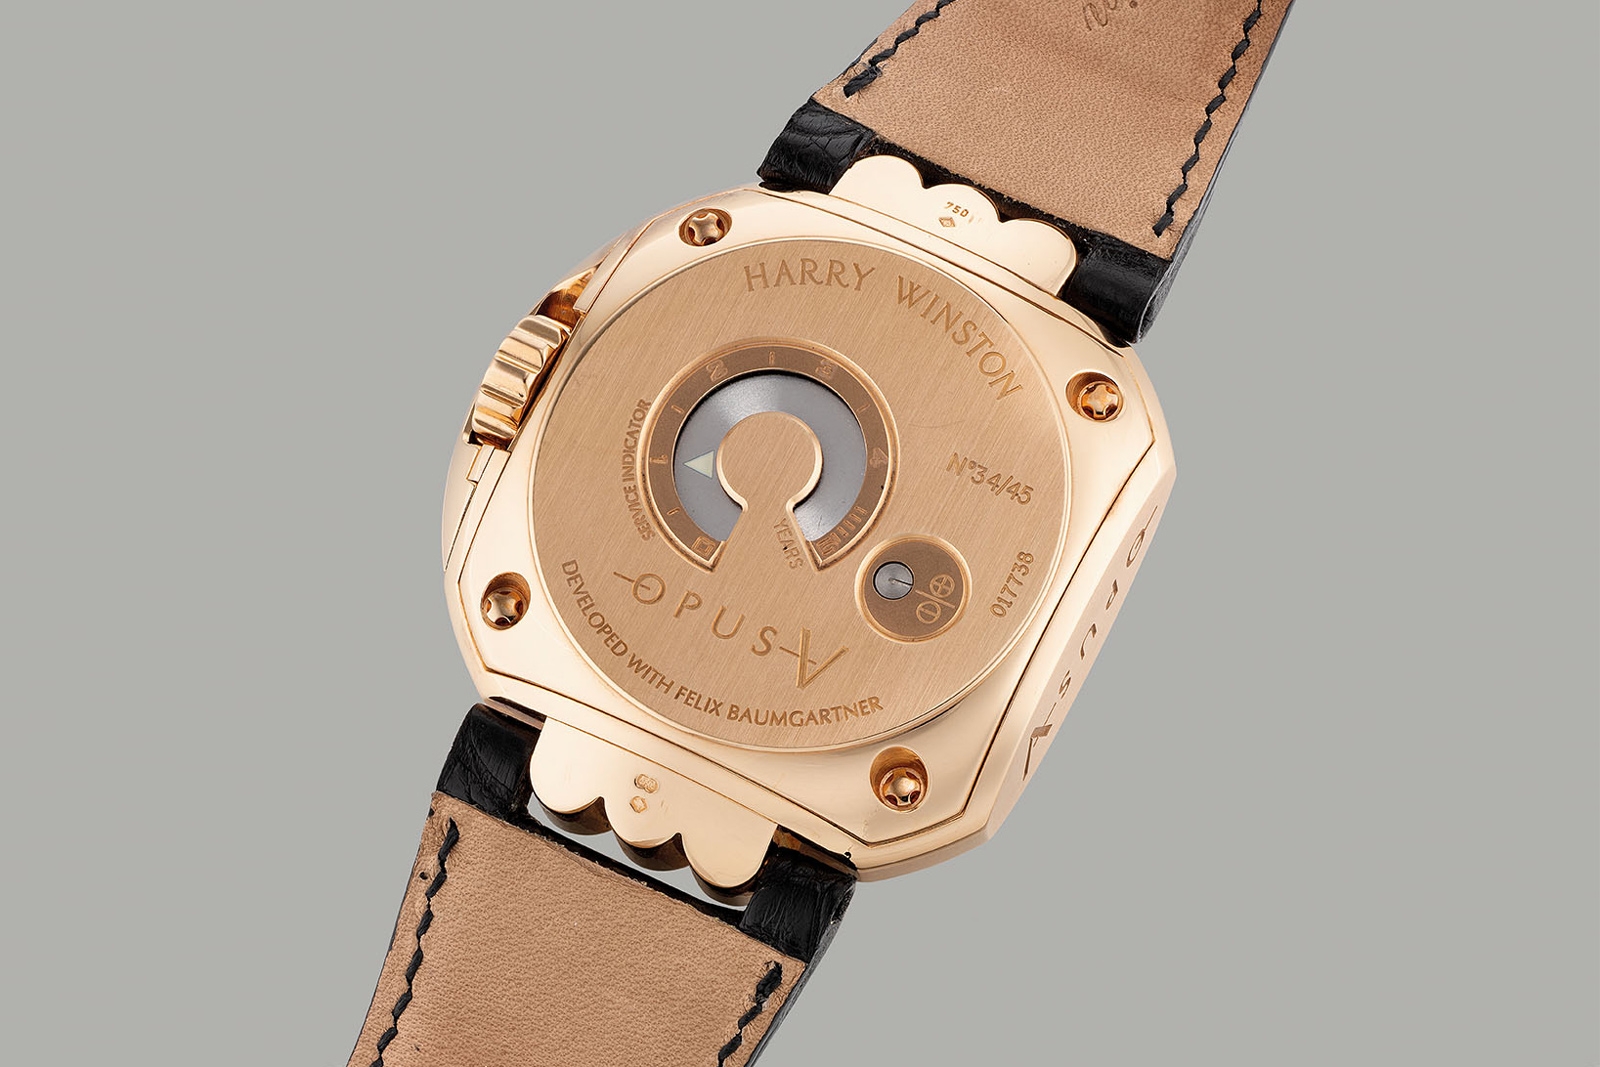  Đồng hồ Harry Winston Opus V